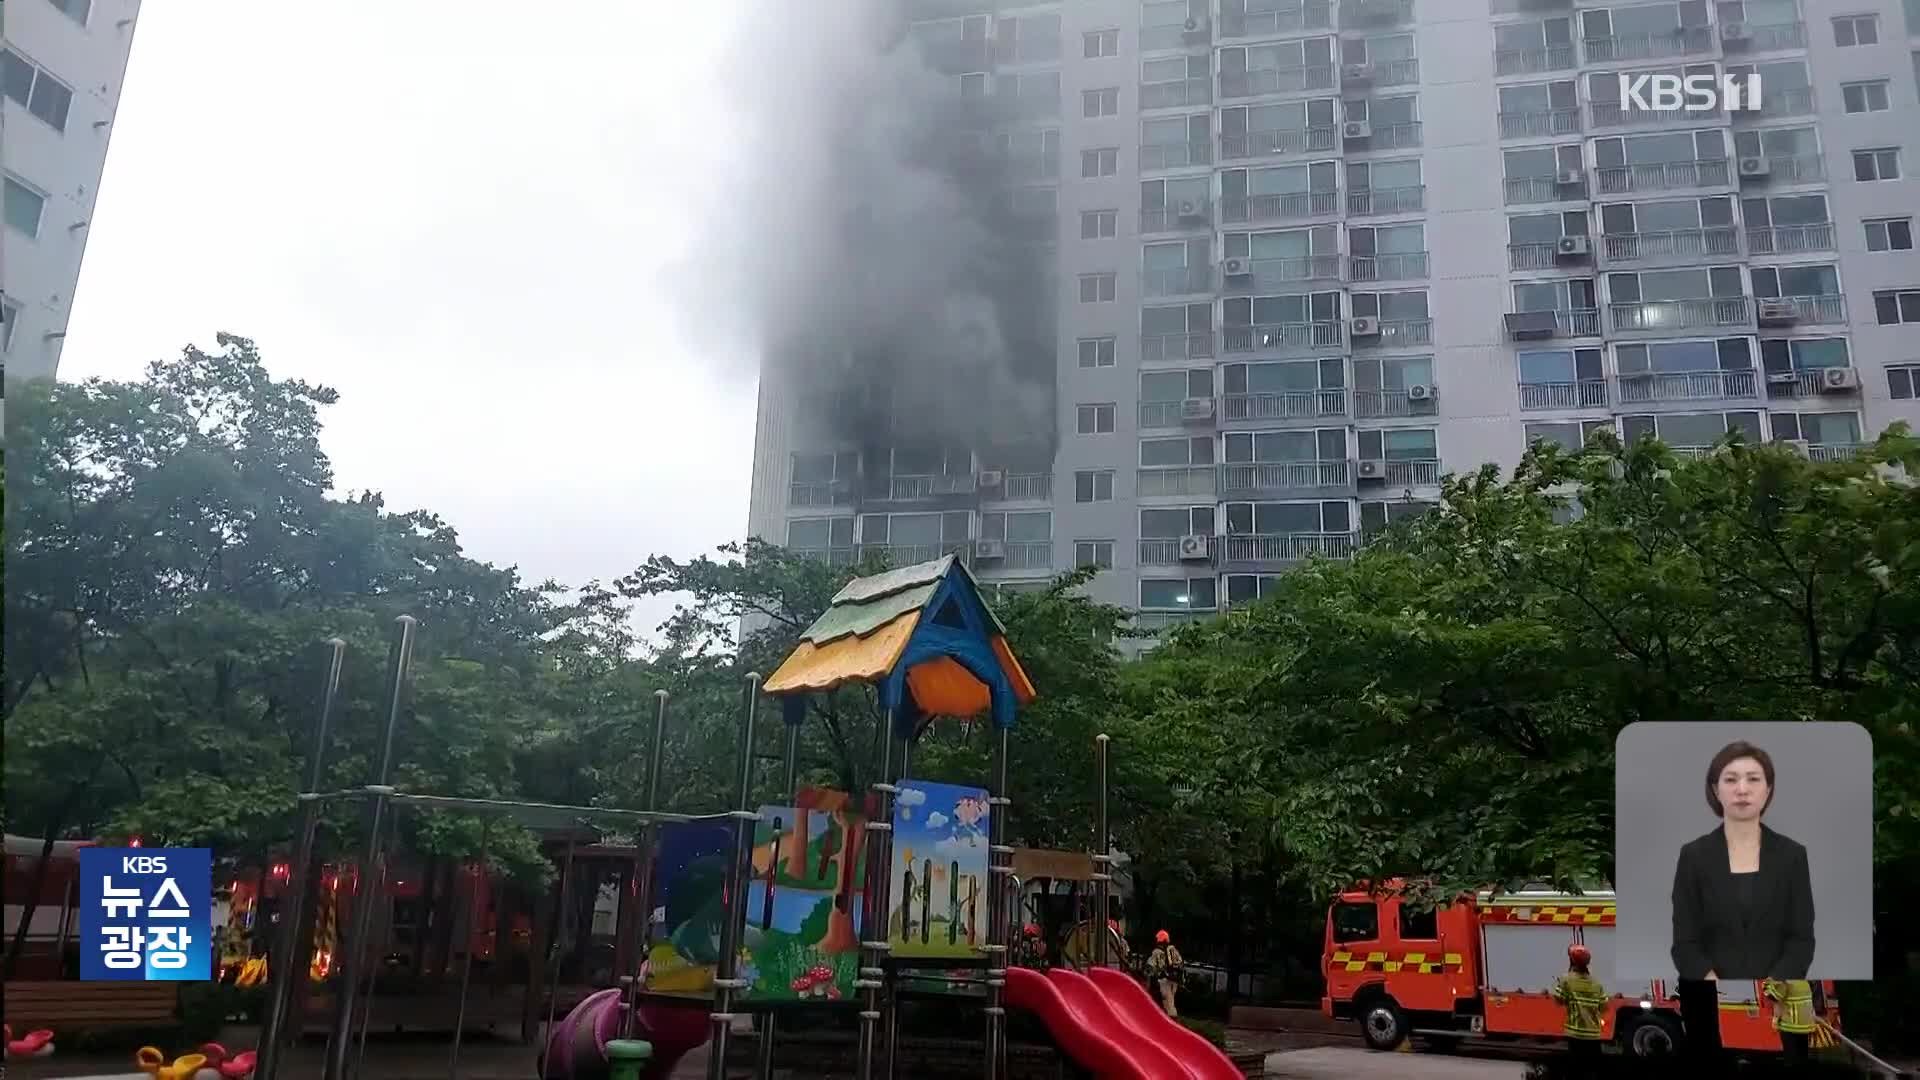 서울 동대문구 아파트서 화재·빗길에 차량 미끄러짐 사고…밤사이 사건사고